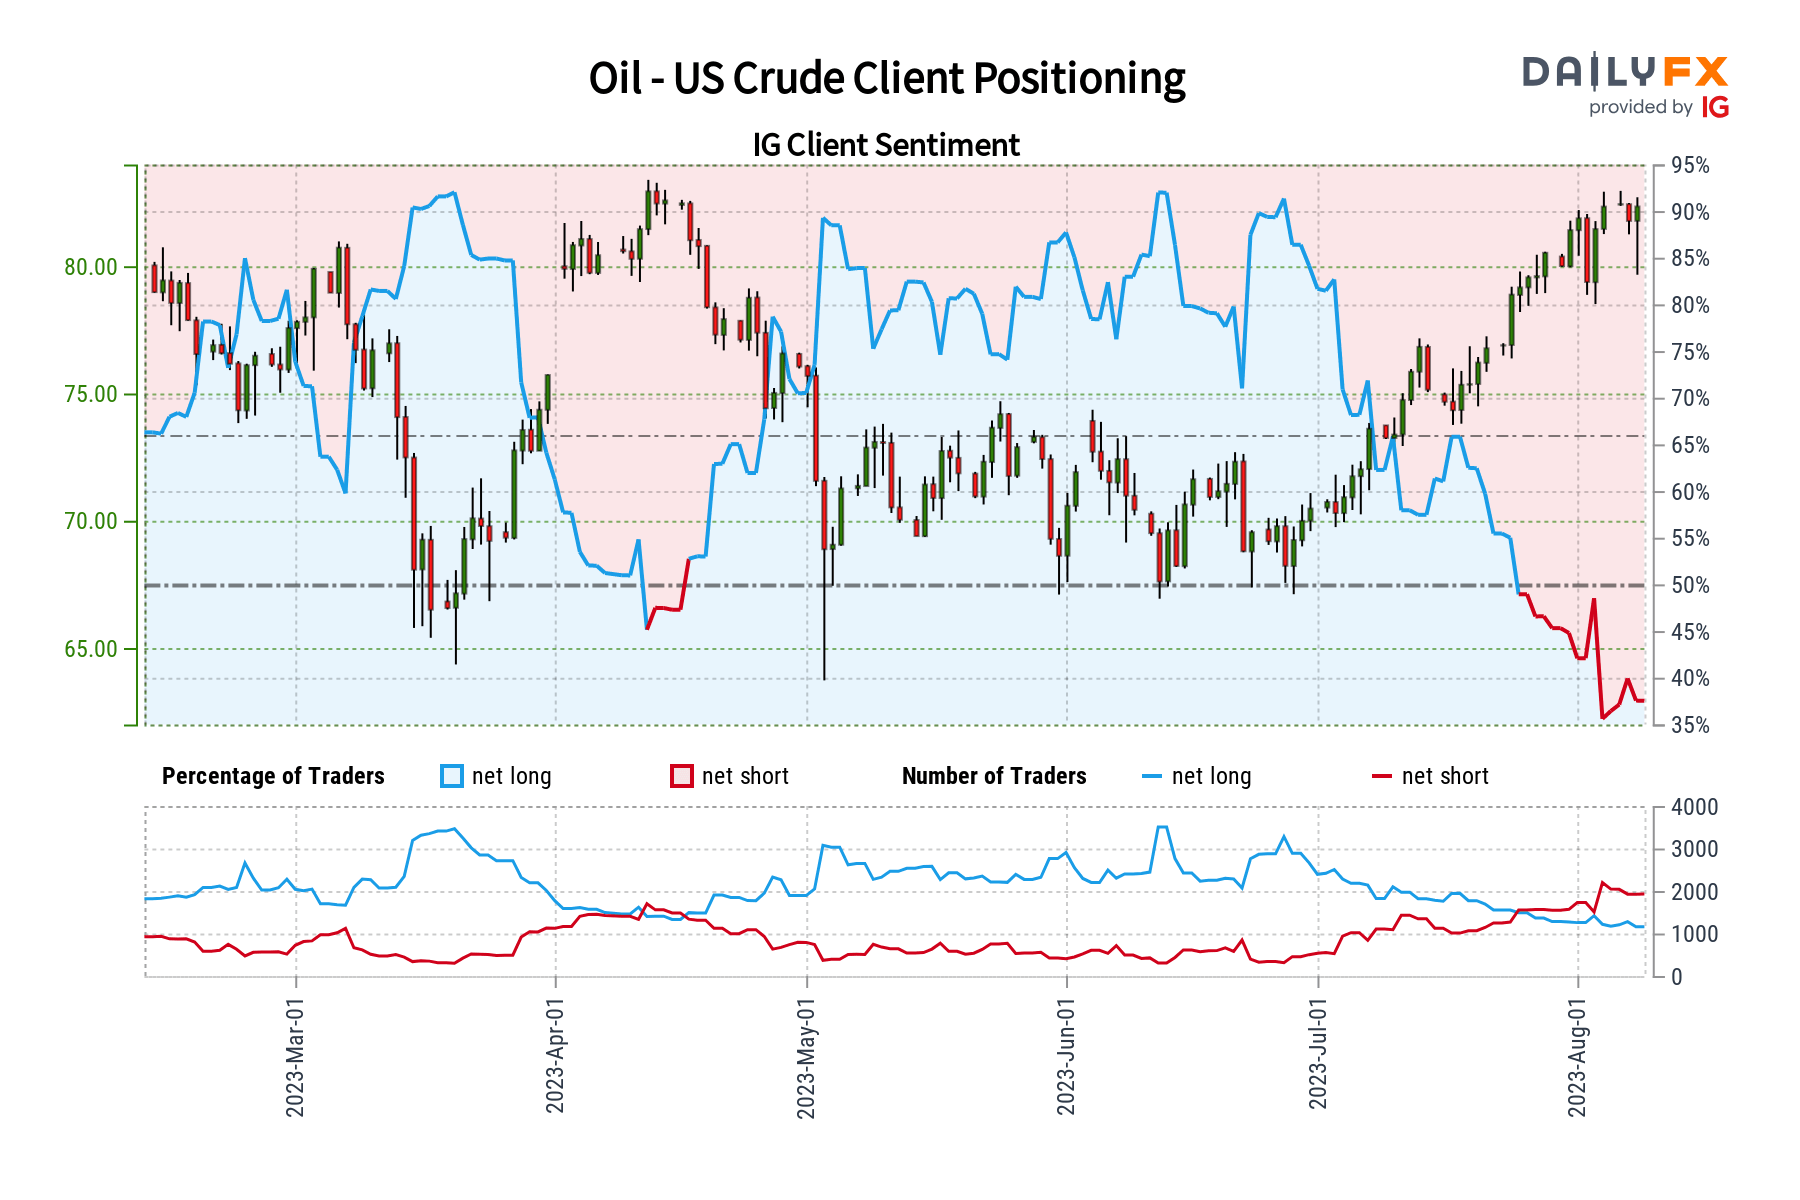 Crude Oil Sentiment Outlook - Bullish